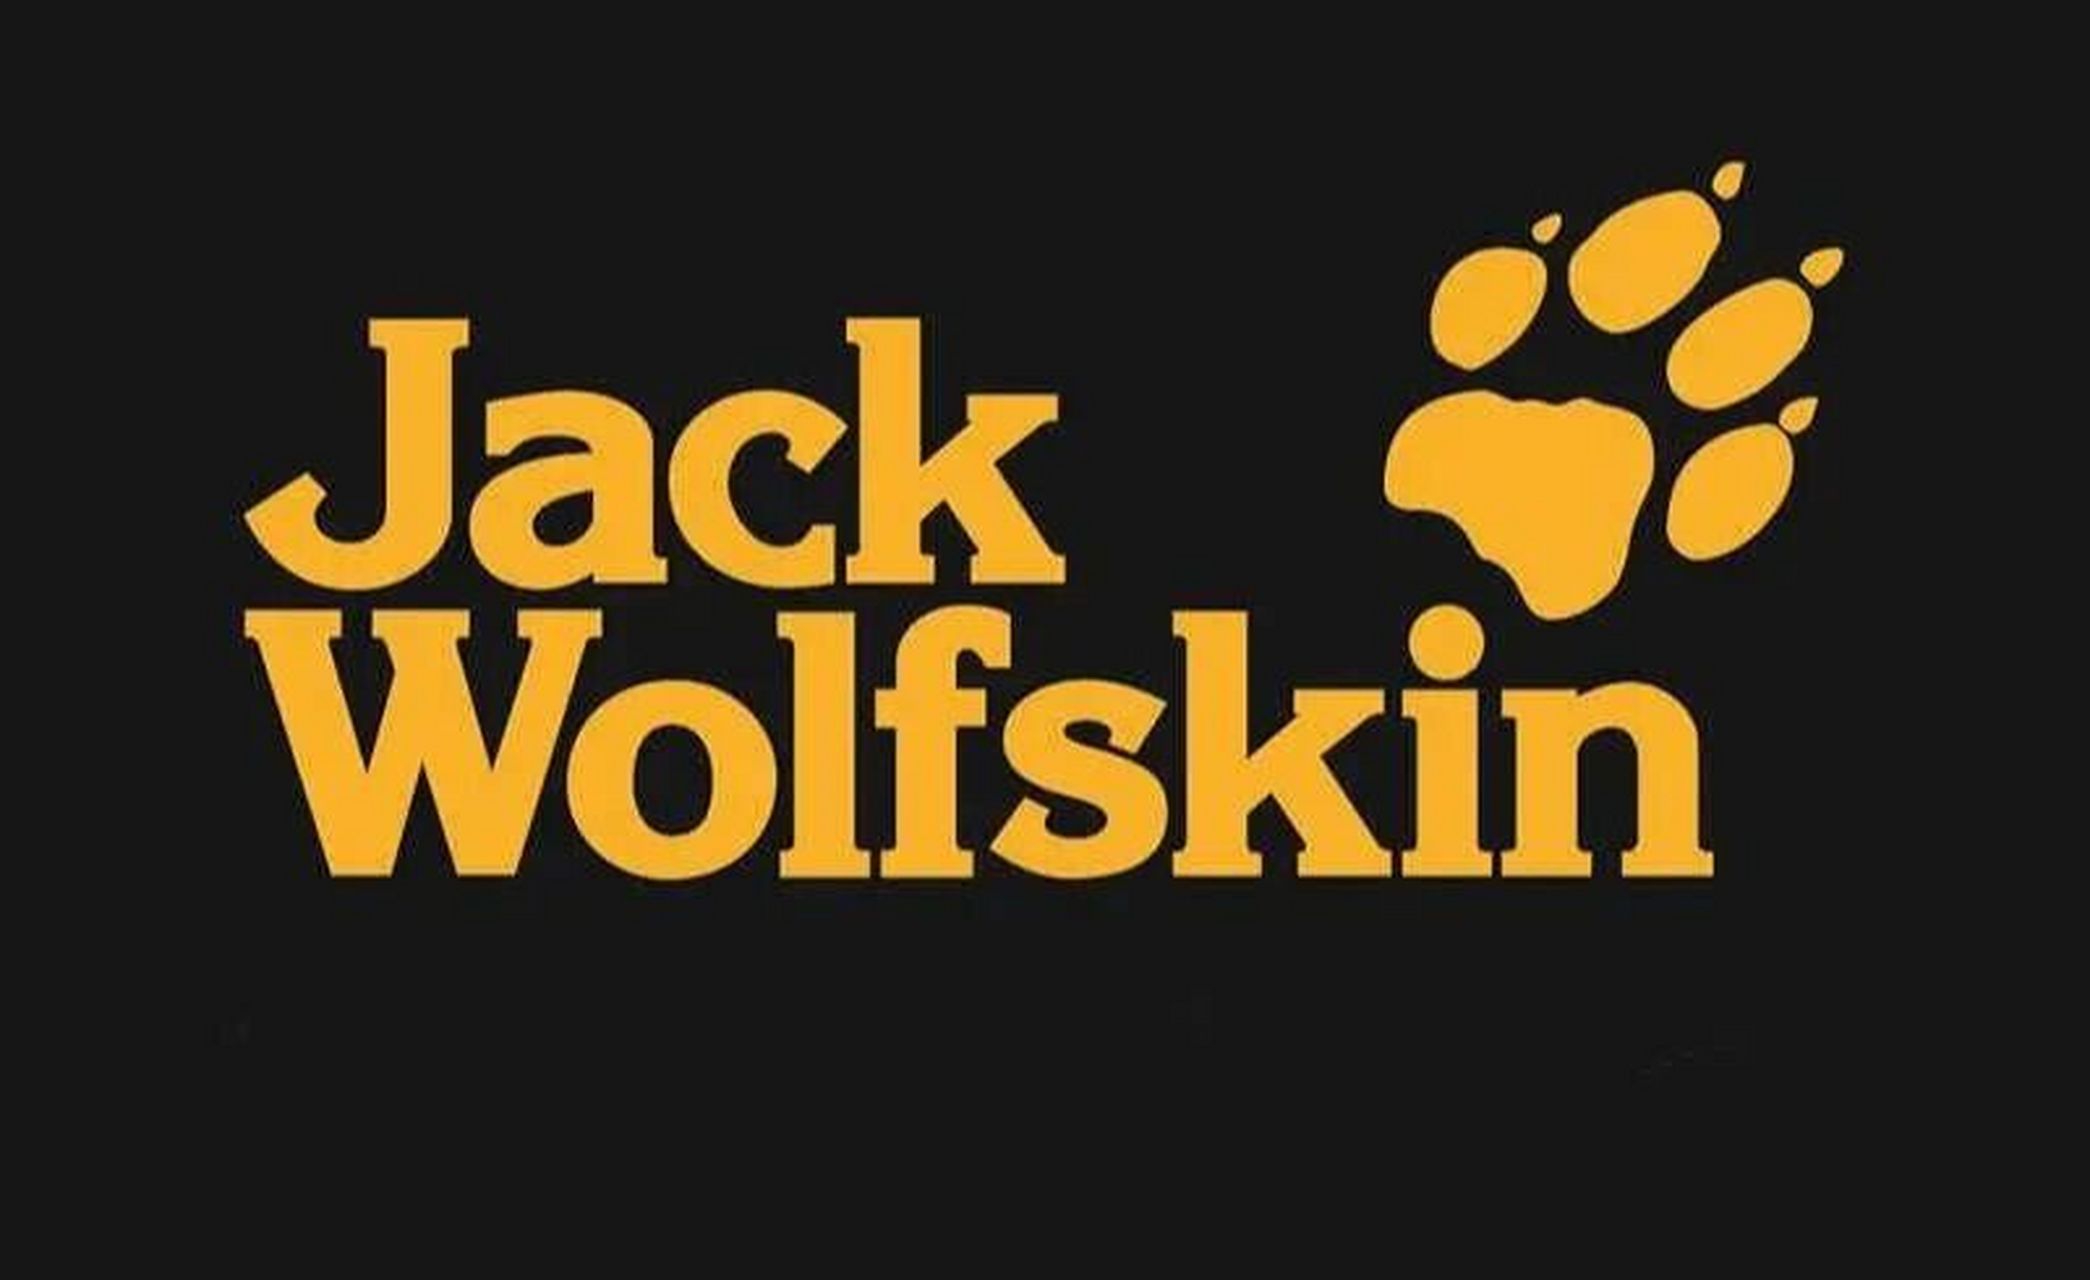 成立时间:1981年 品牌简介:jack wolfskin创立于1981年,总部位于德国